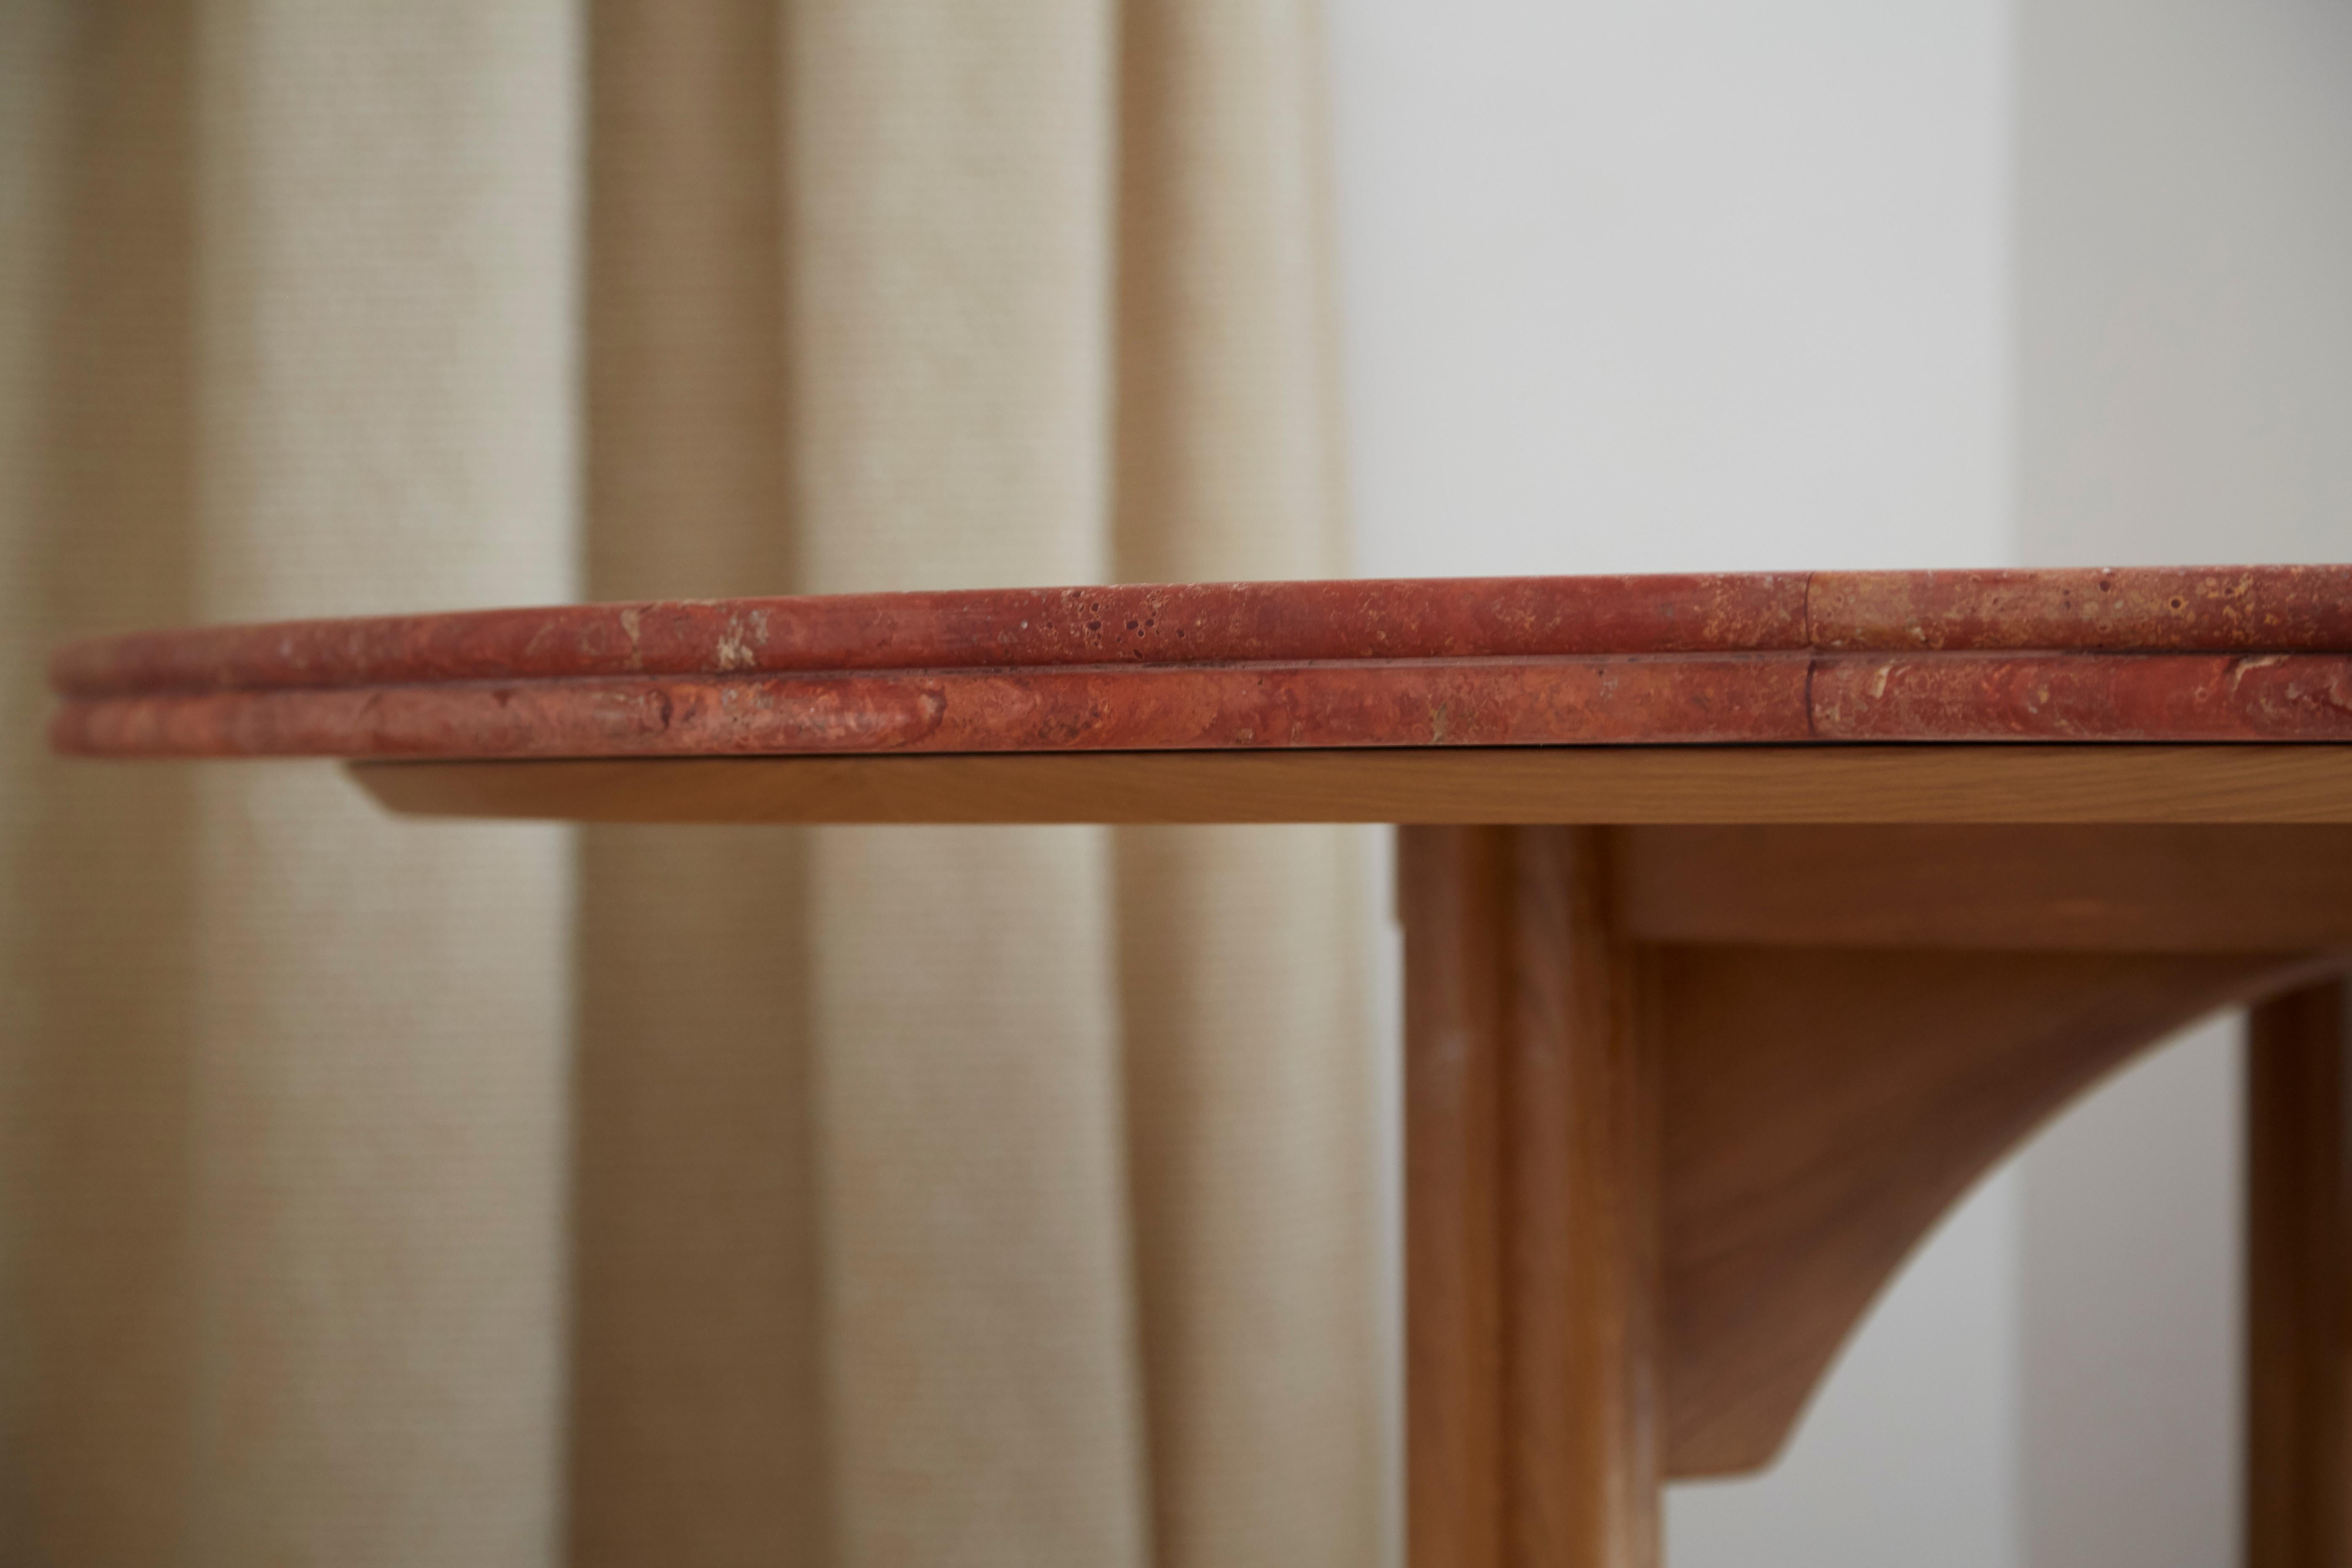 Table de salle à manger avec un double plateau rond, marqueterie de travertin rouge en forme de soleil, conçue par Laura Gonzalez. Pieds en chêne clair avec détails ronds et courbes. Tout est fabriqué en France.